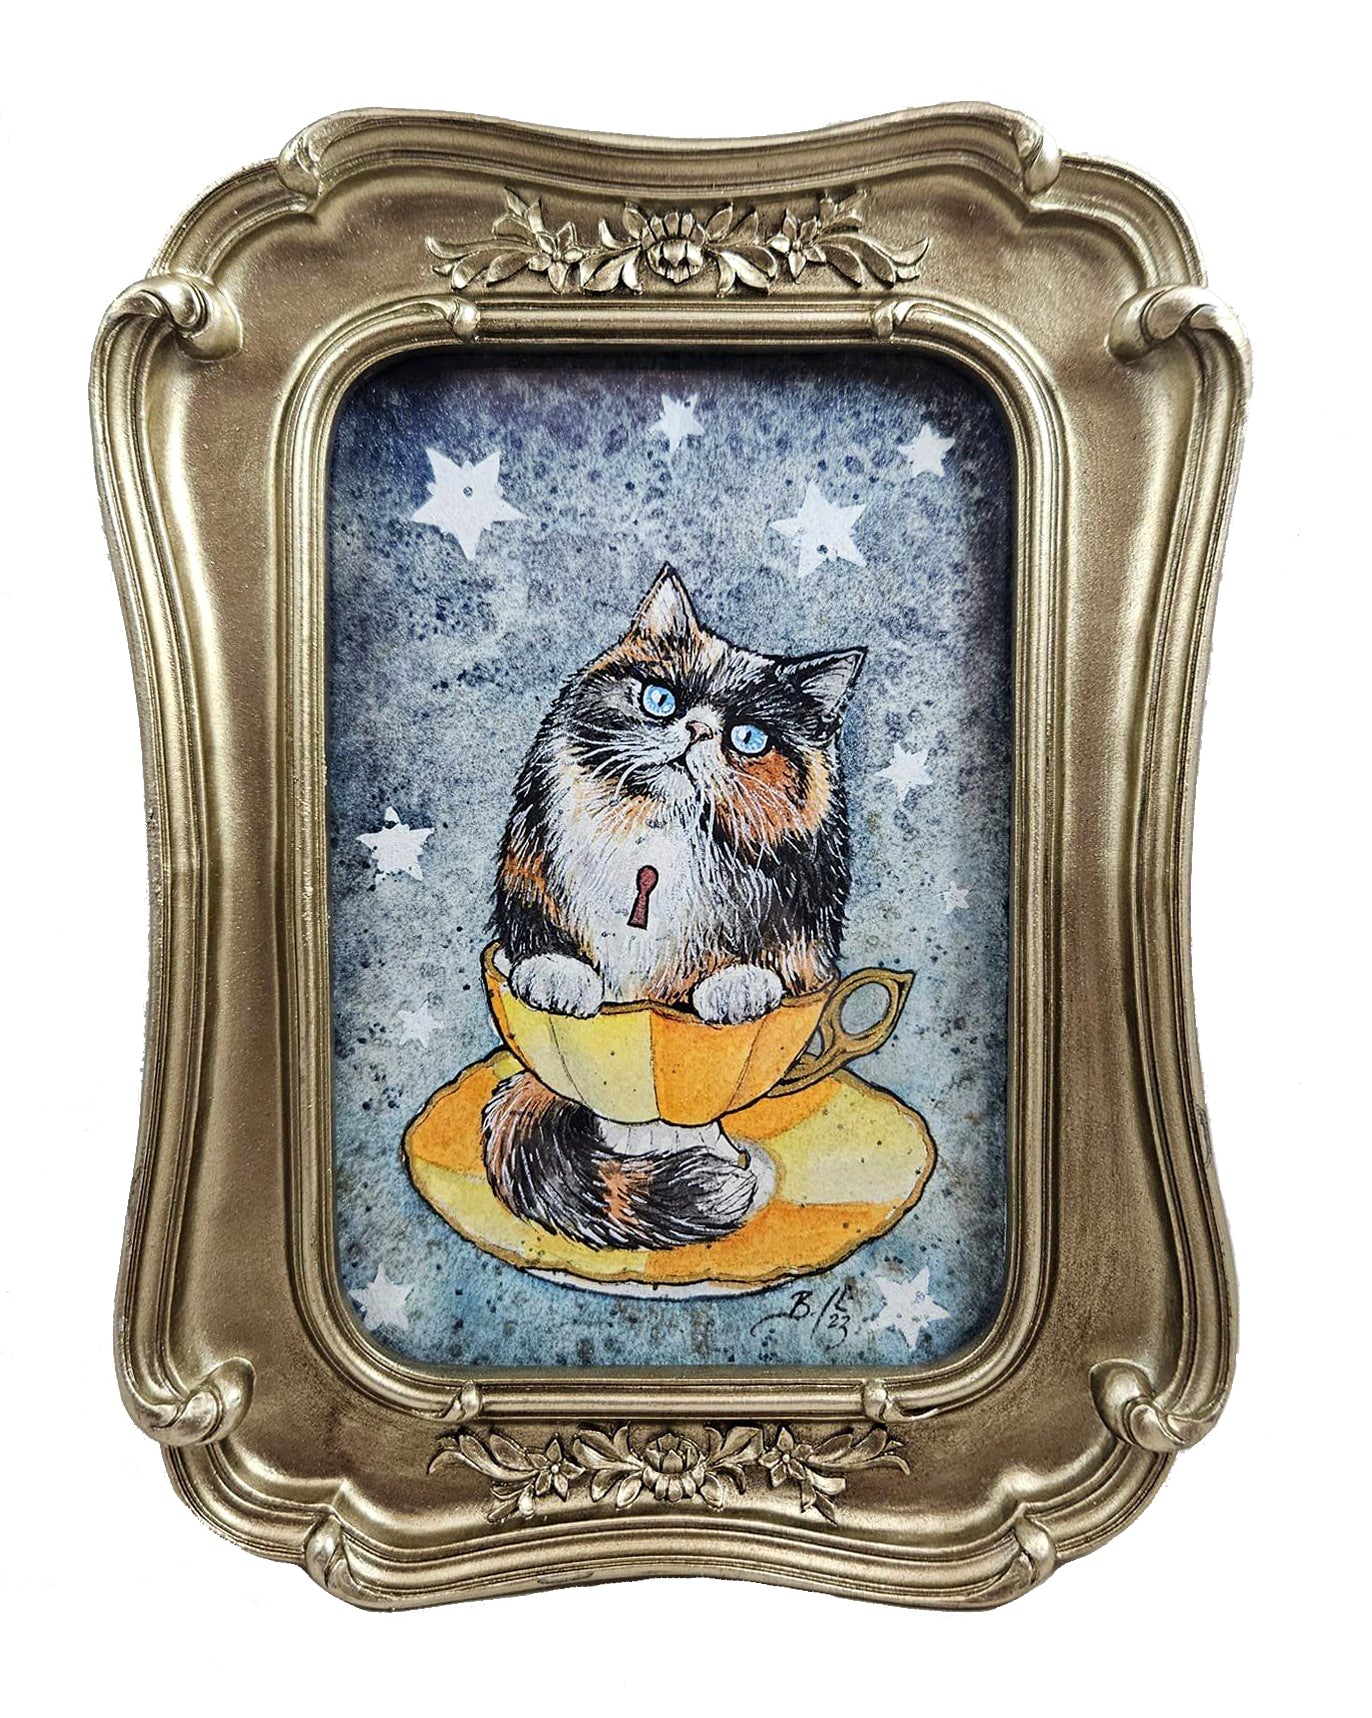 Original Art- Teacup Kitten: Jasmine with Stars